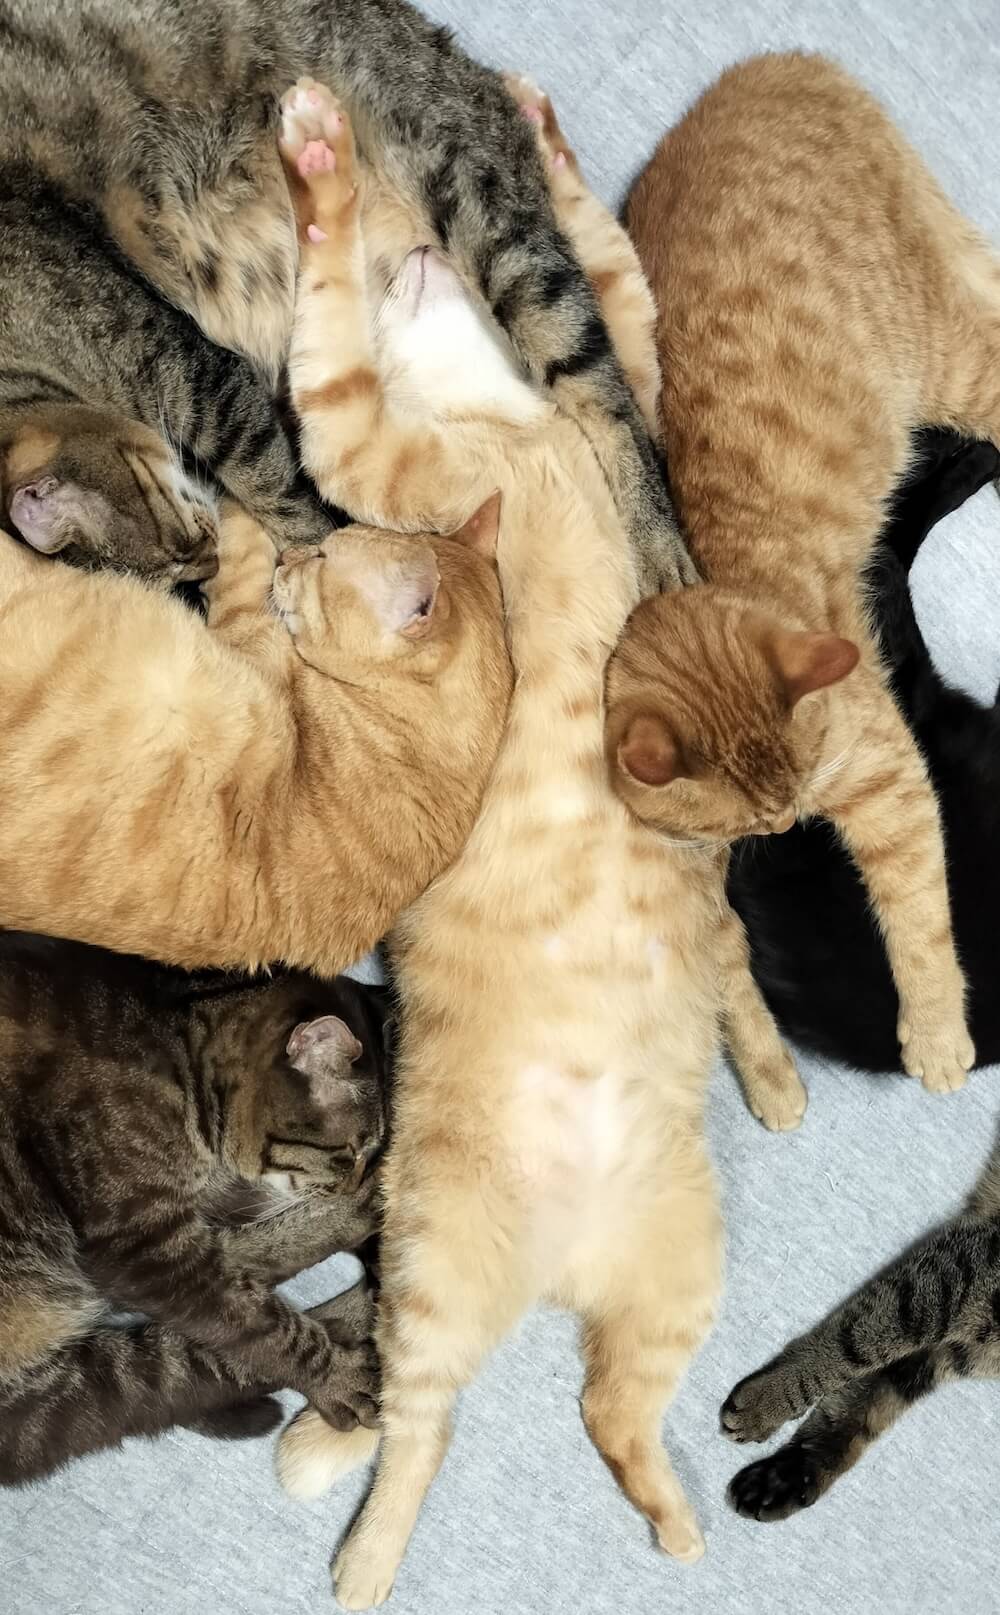 へそ天する猫のお腹を枕にして寝る猫たち